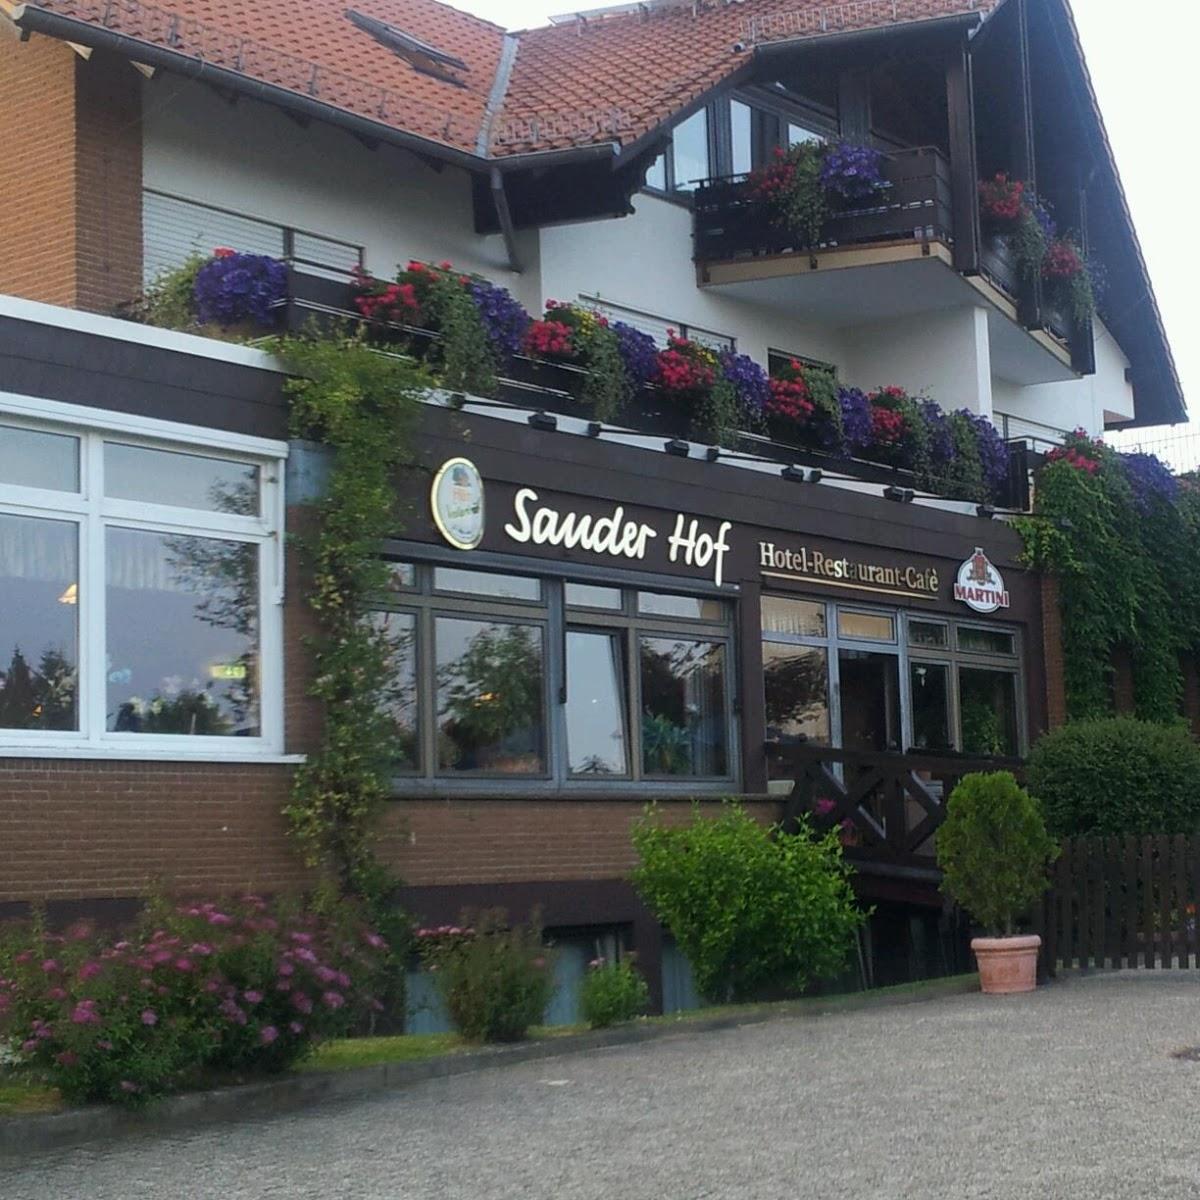 Restaurant "Sander Hof" in Bad Emstal